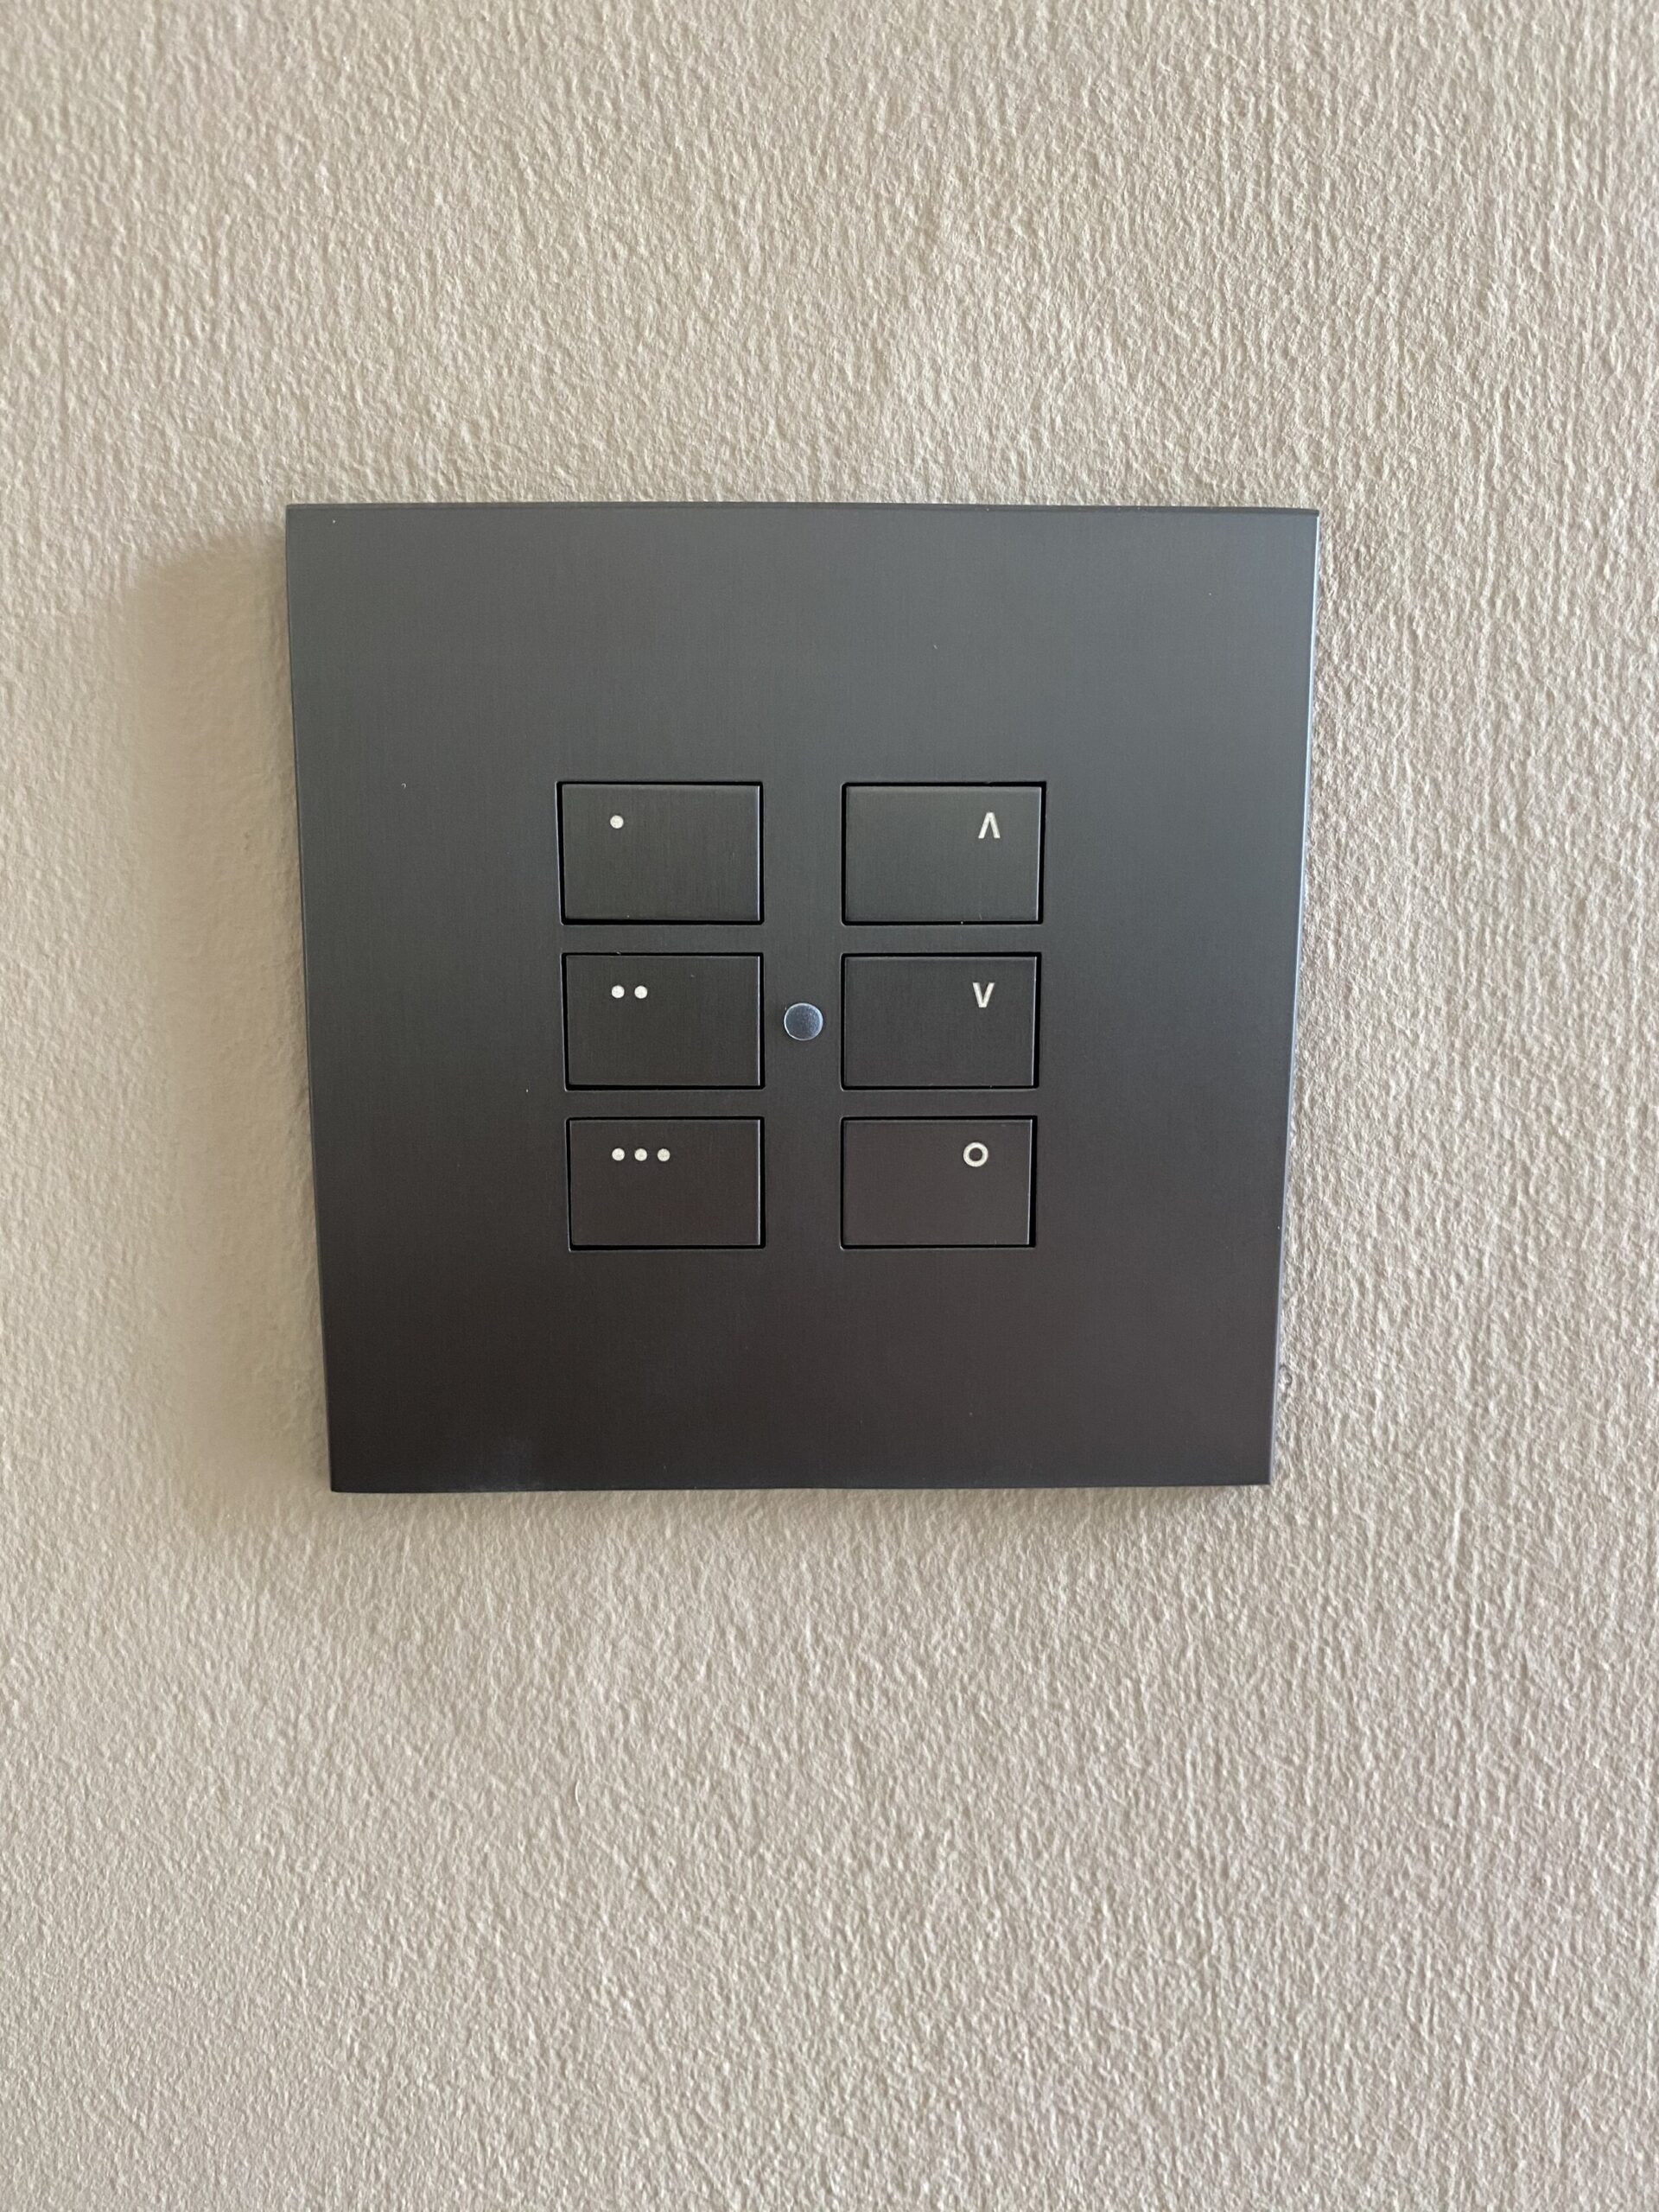 Rako EOS keypad mounted to the wall